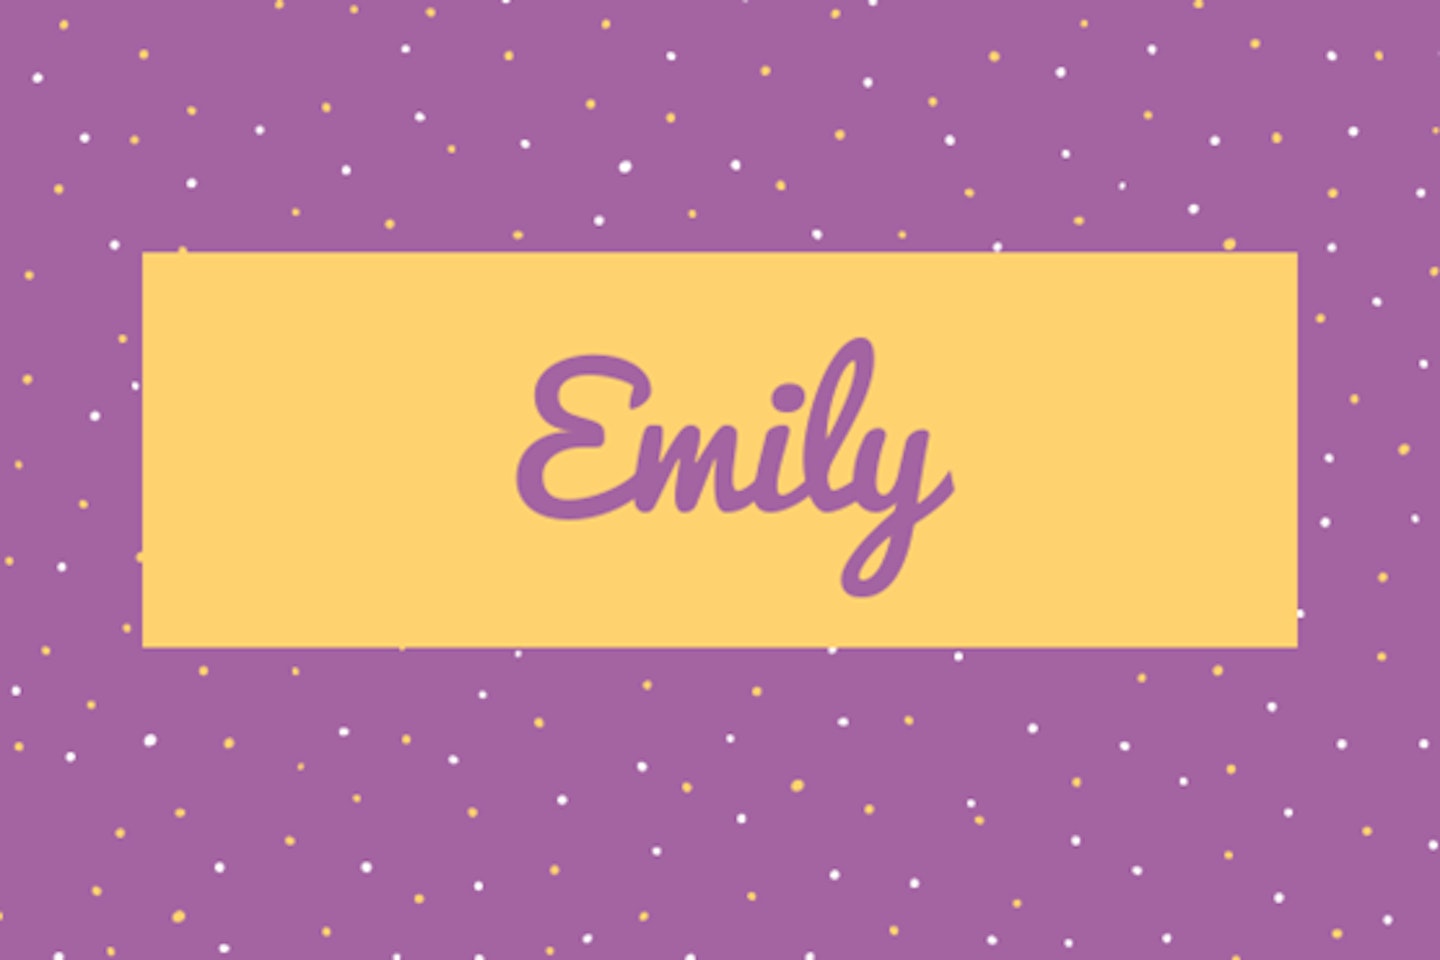 47) Emily